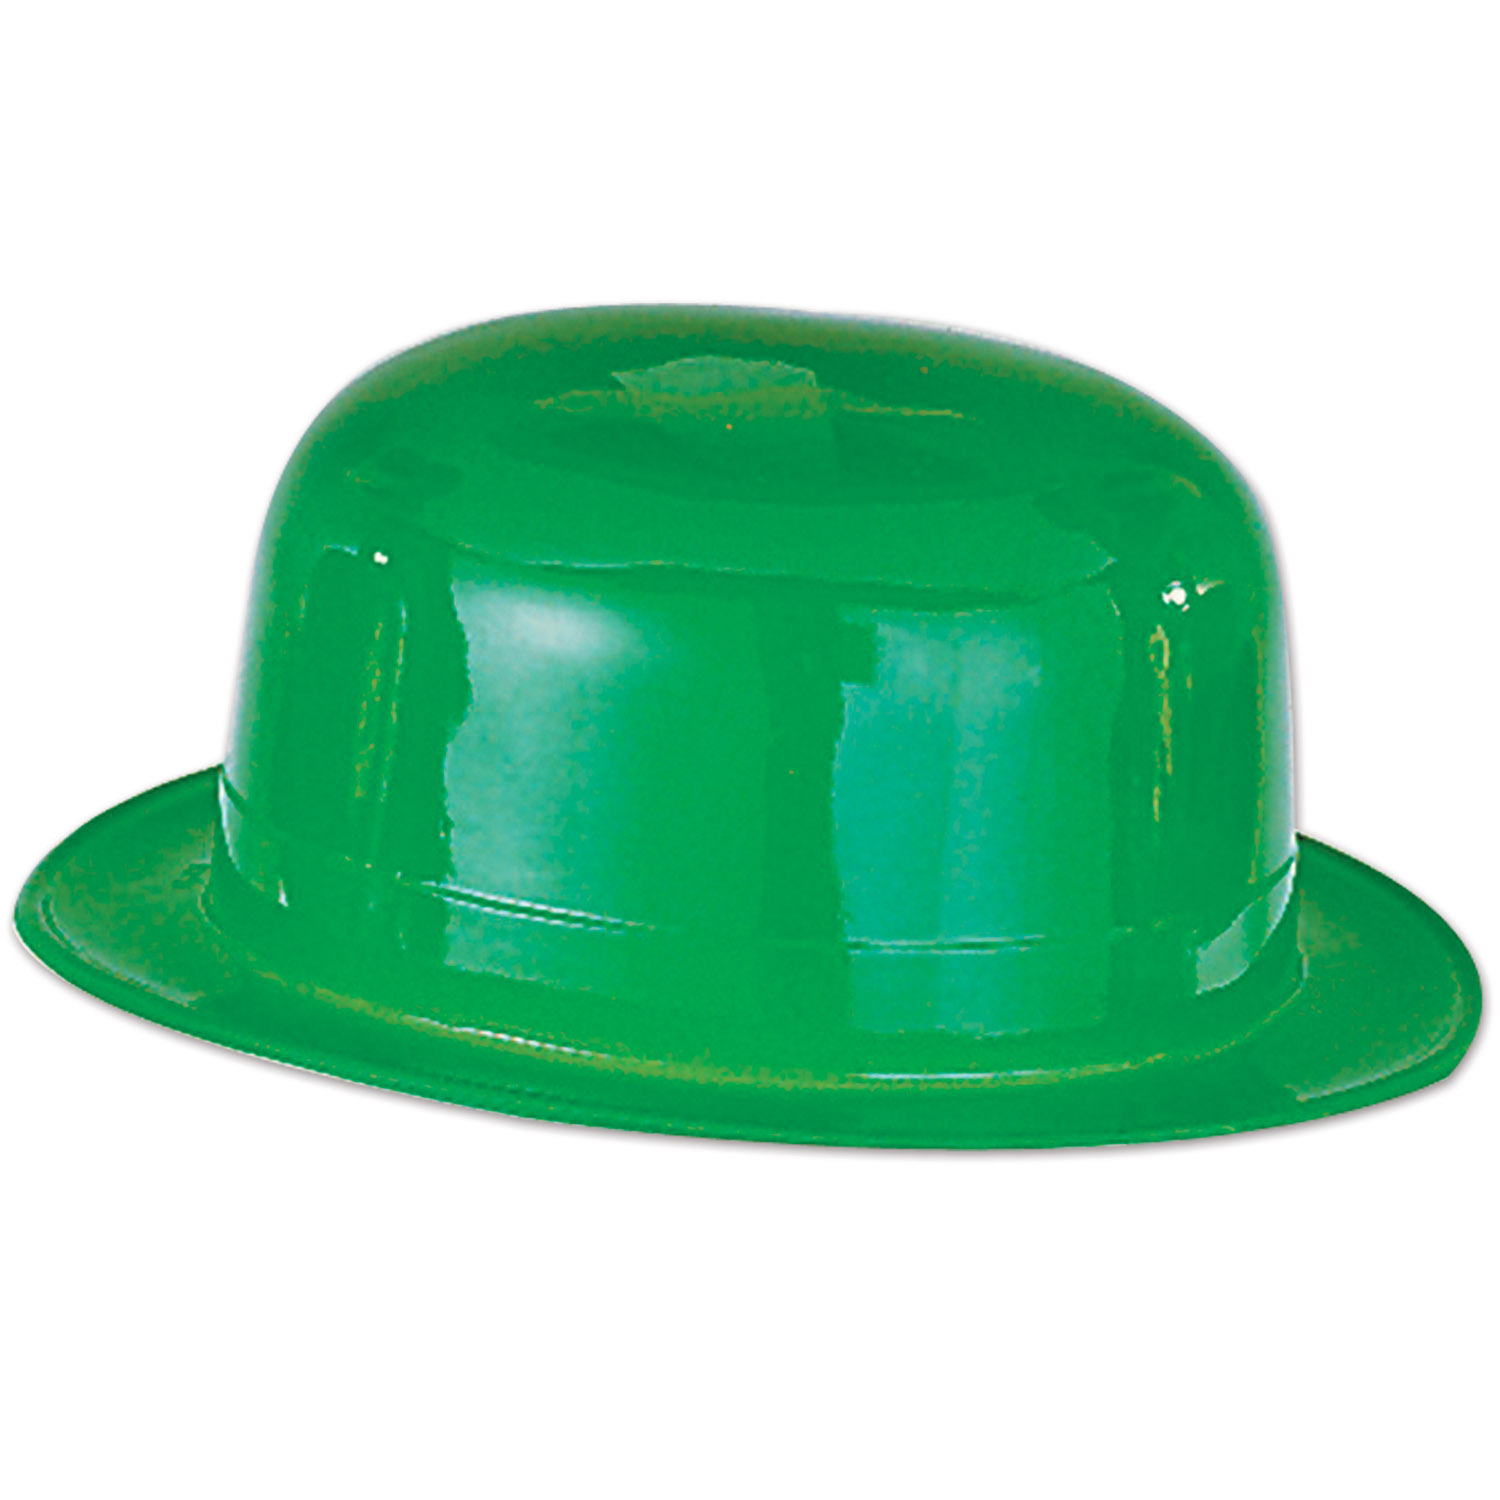 Шляпа пластиковая. Шляпы пластмассовые. Зеленая шляпа. Форма пластиковая для шляп. Шляпа зеленого цвета.